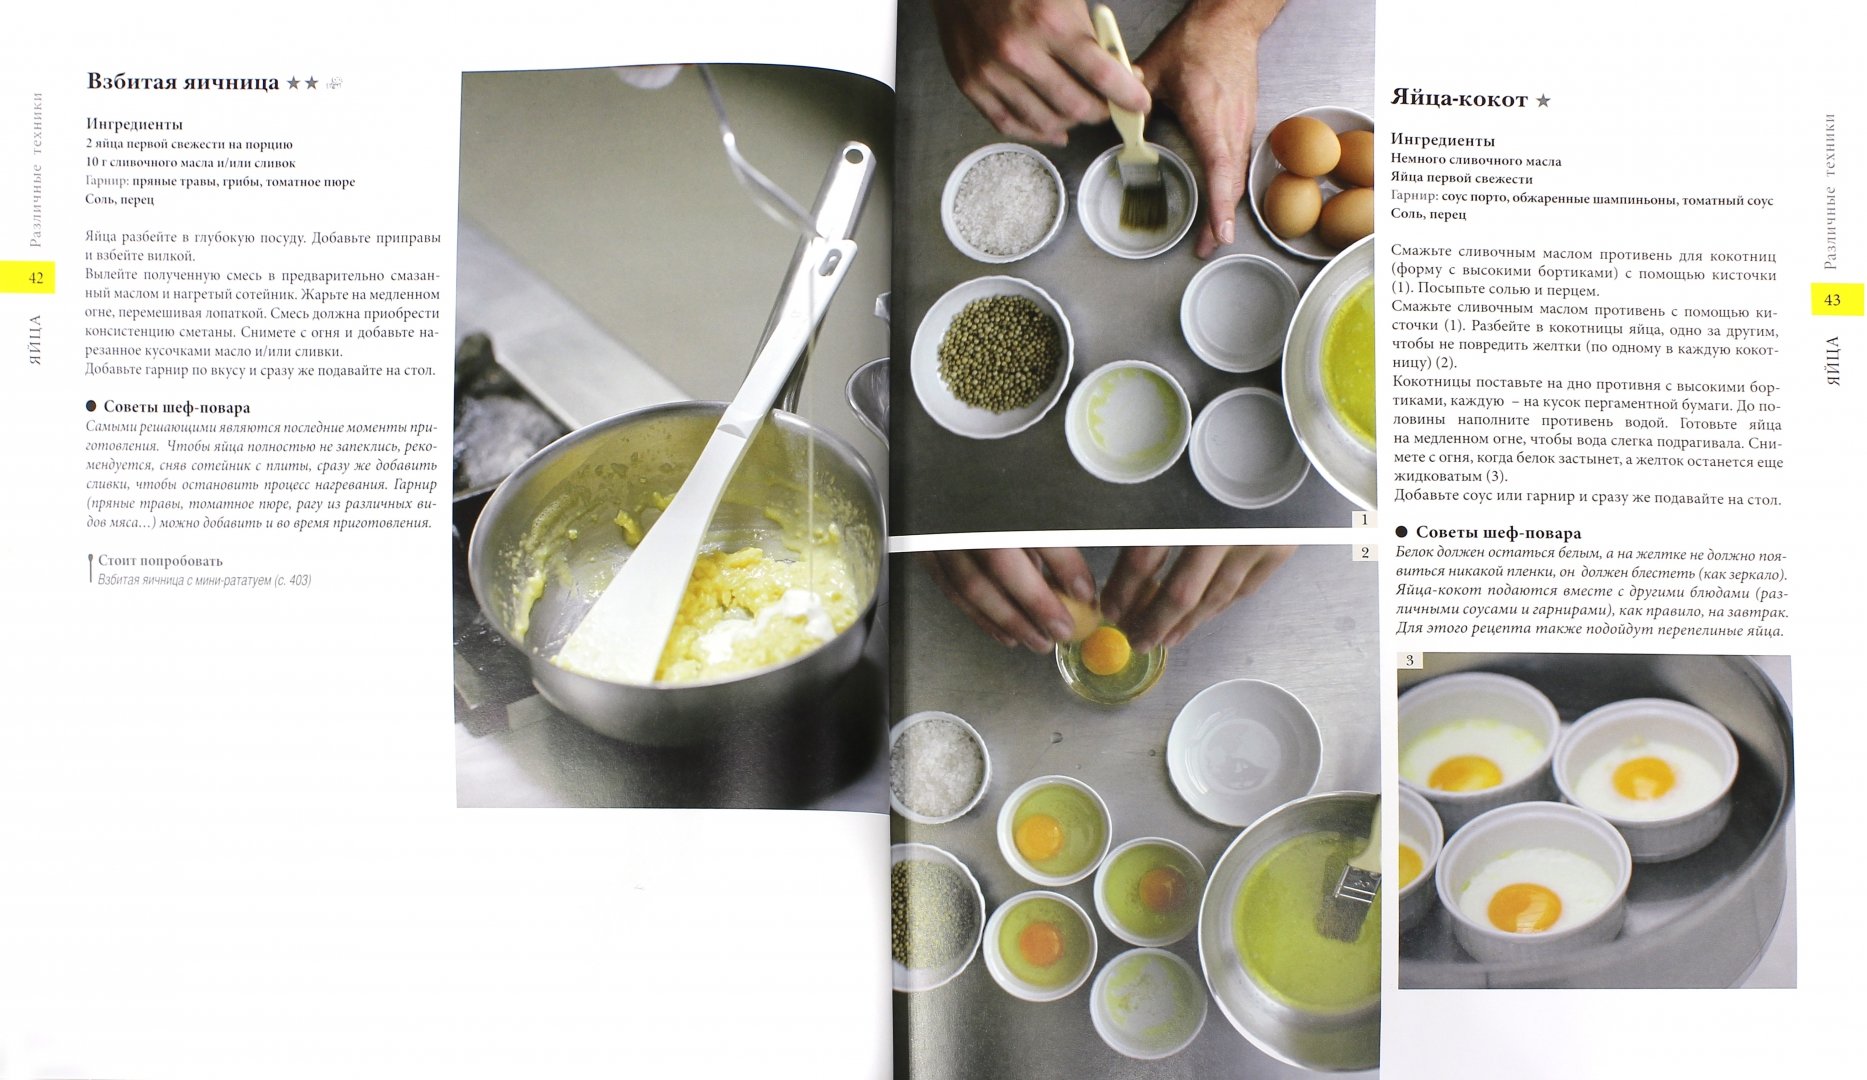 Иллюстрация 1 из 17 для Энциклопедия французской кухни (+DVD) - Буэ, Делорм | Лабиринт - книги. Источник: Лабиринт